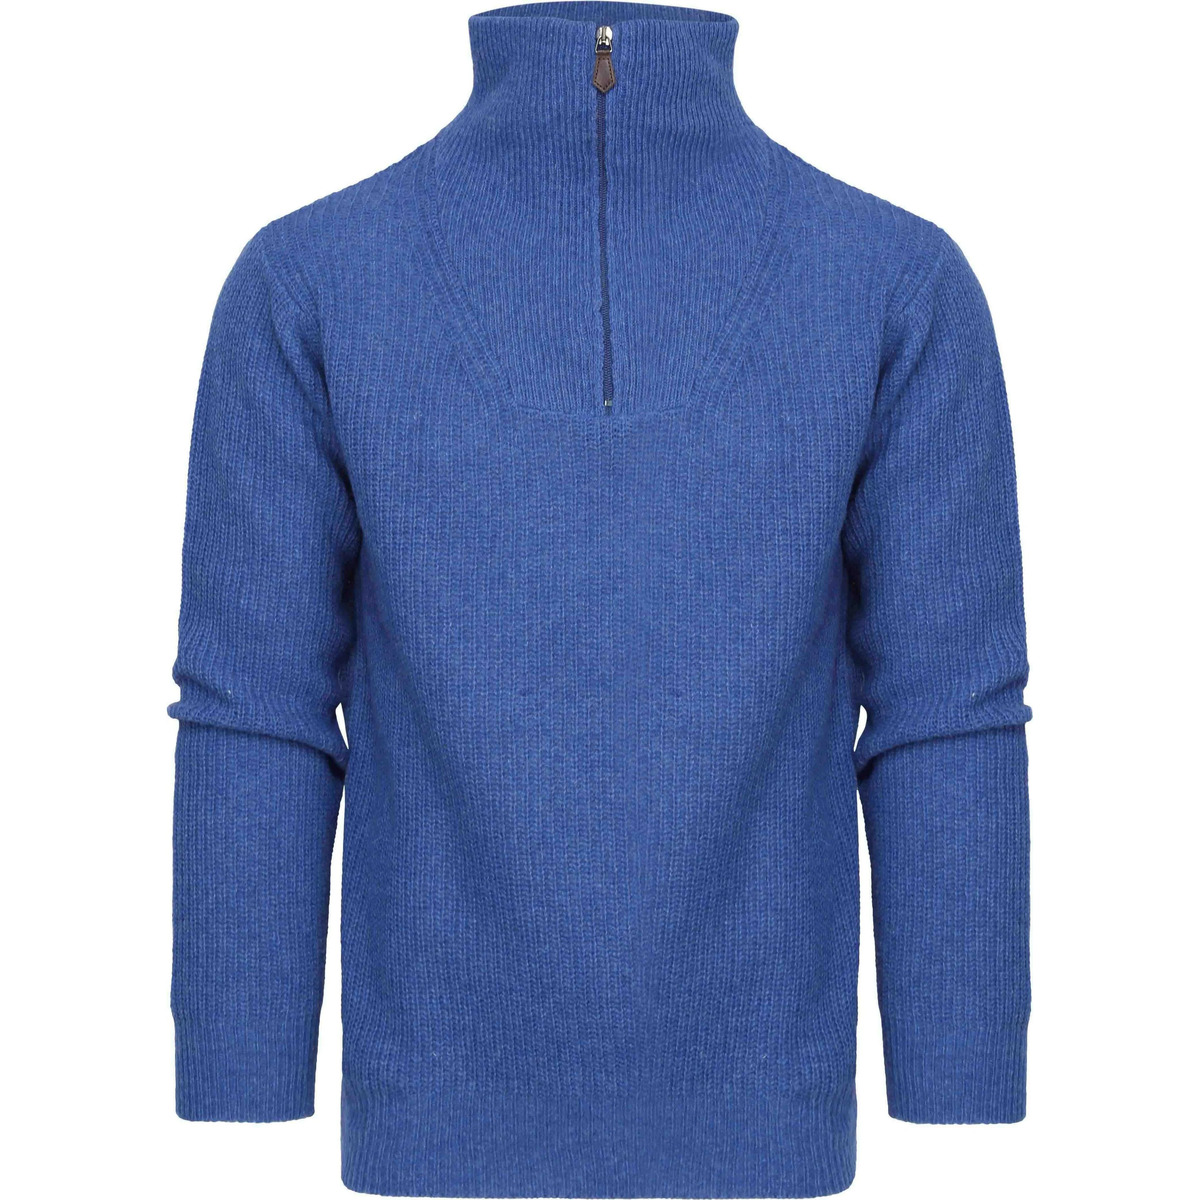 Textiel Heren Sweaters / Sweatshirts Suitable Half Zip Trui Wol Blend Blauw Blauw